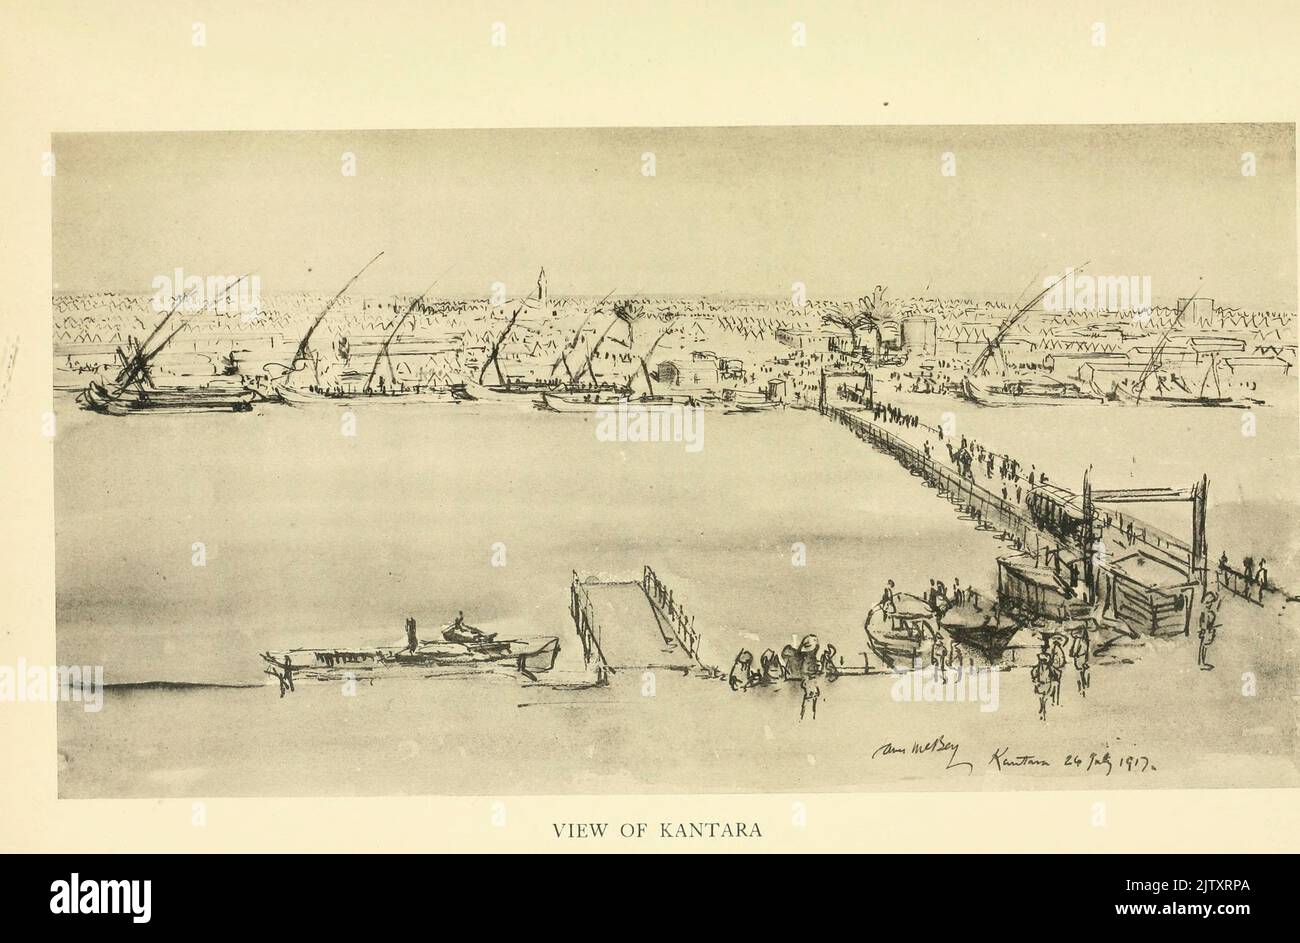 VISTA DI KANTARA aka El Qantara, al qantara, città egiziana nord-orientale su entrambi i lati del canale di Suez, dal libro ' NILO AD ALEPPO ' DAL CAPITANO DI CENA HECTOR. ESERCITO AUSTRALIANO ILLUSTRATO DA JAMES MCBEY EDITORE NEW YORK, MACMILLAN 1920 AL CAVALIERE LEGGERO DELL'AUSTRALIA E AI CAVALLI CHE SI SONO LEVATI ACCANTO A LORO QUESTO LIBRO È DEDICATO Foto Stock